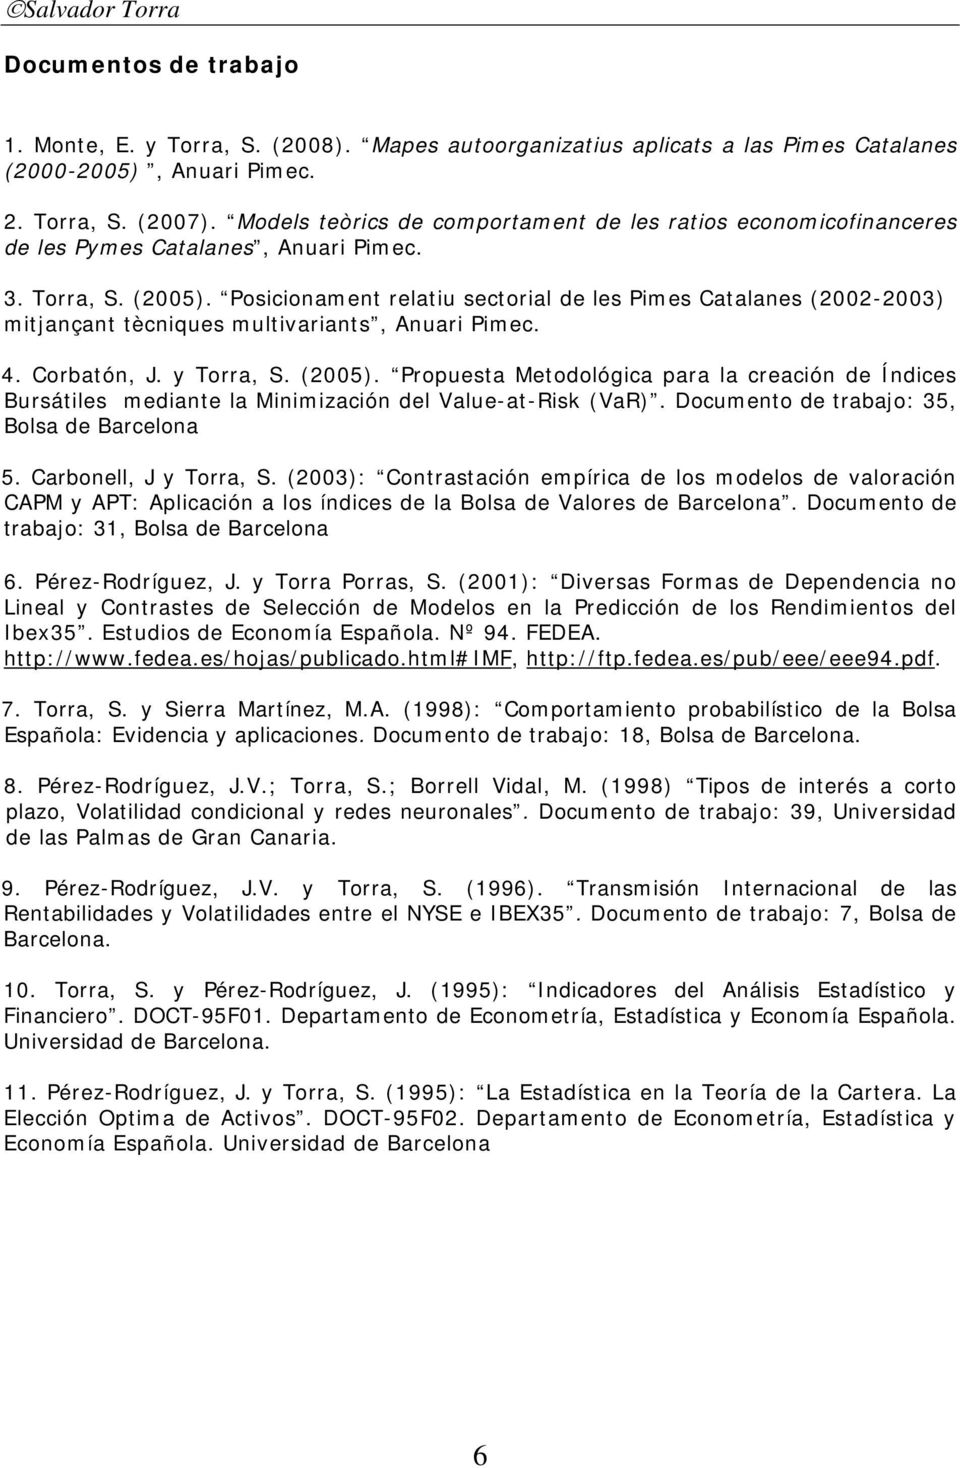 Posicionament relatiu sectorial de les Pimes Catalanes (2002-2003) mitjançant tècniques multivariants, Anuari Pimec. 4. Corbatón, J. y Torra, S. (2005).